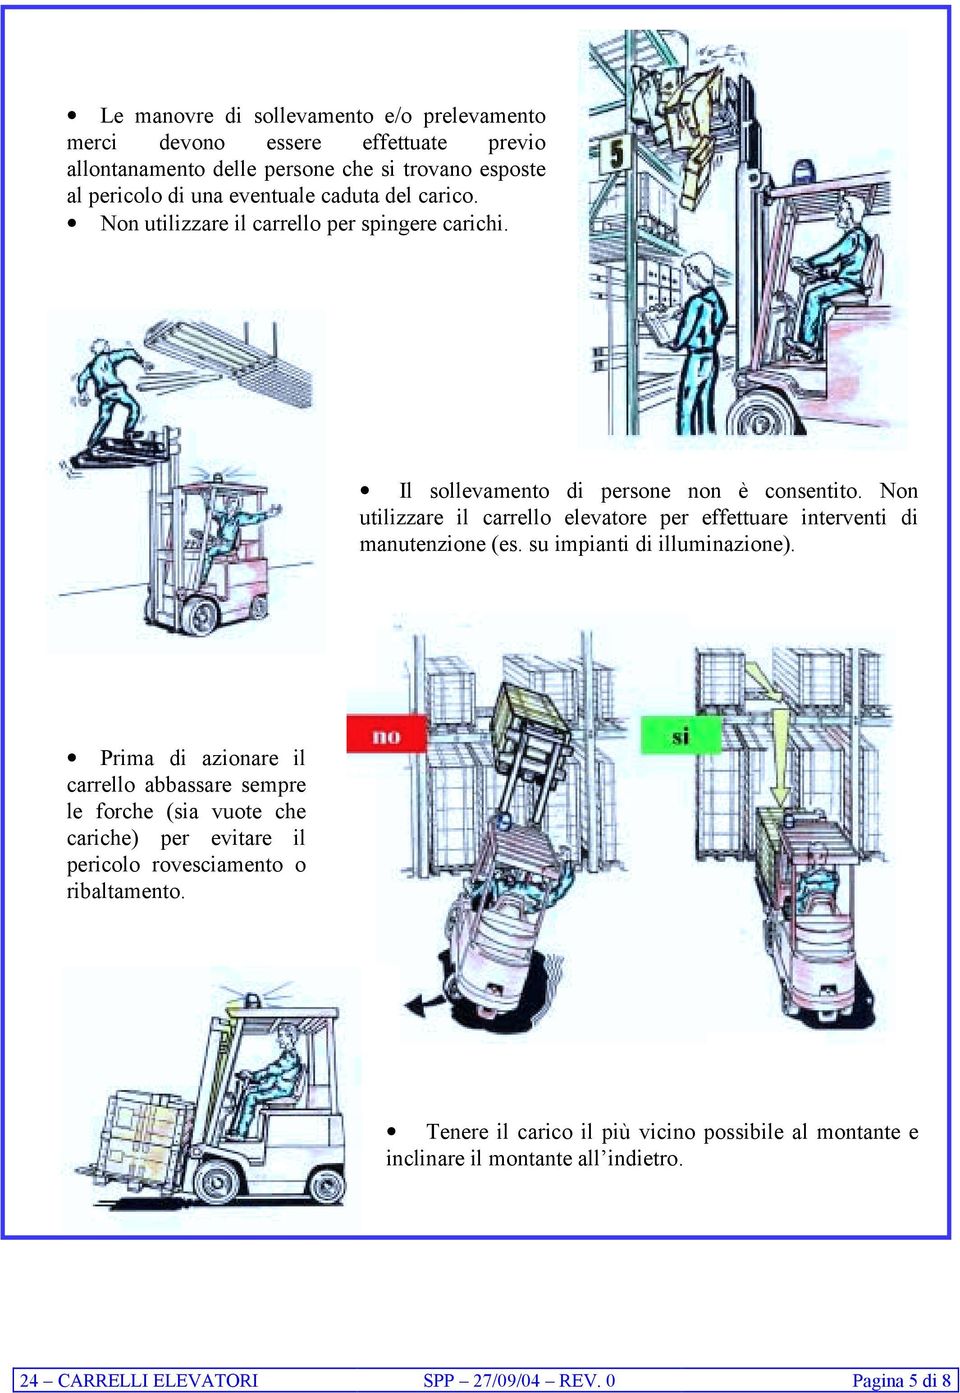 Non utilizzare il carrello elevatore per effettuare interventi di manutenzione (es. su impianti di illuminazione).